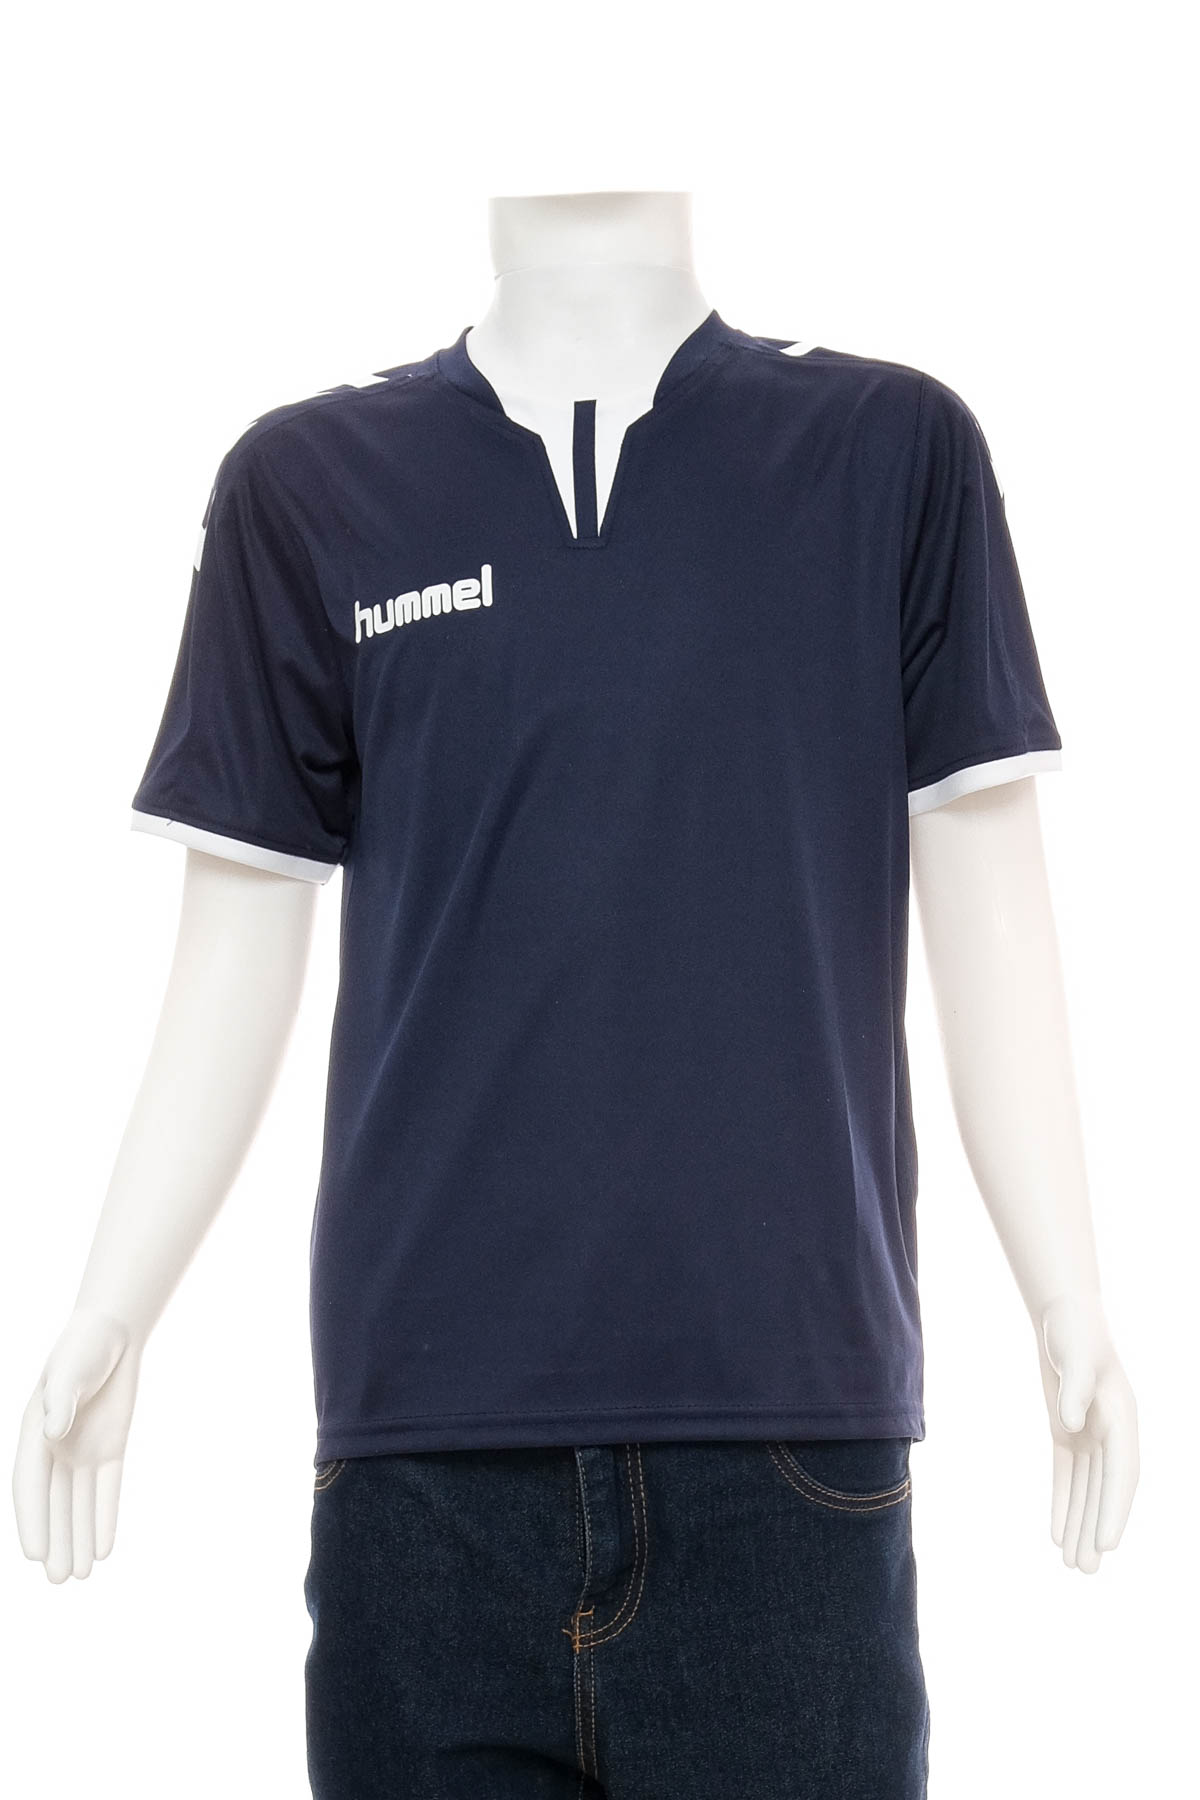 Boy's t-shirt - Hummel - 0